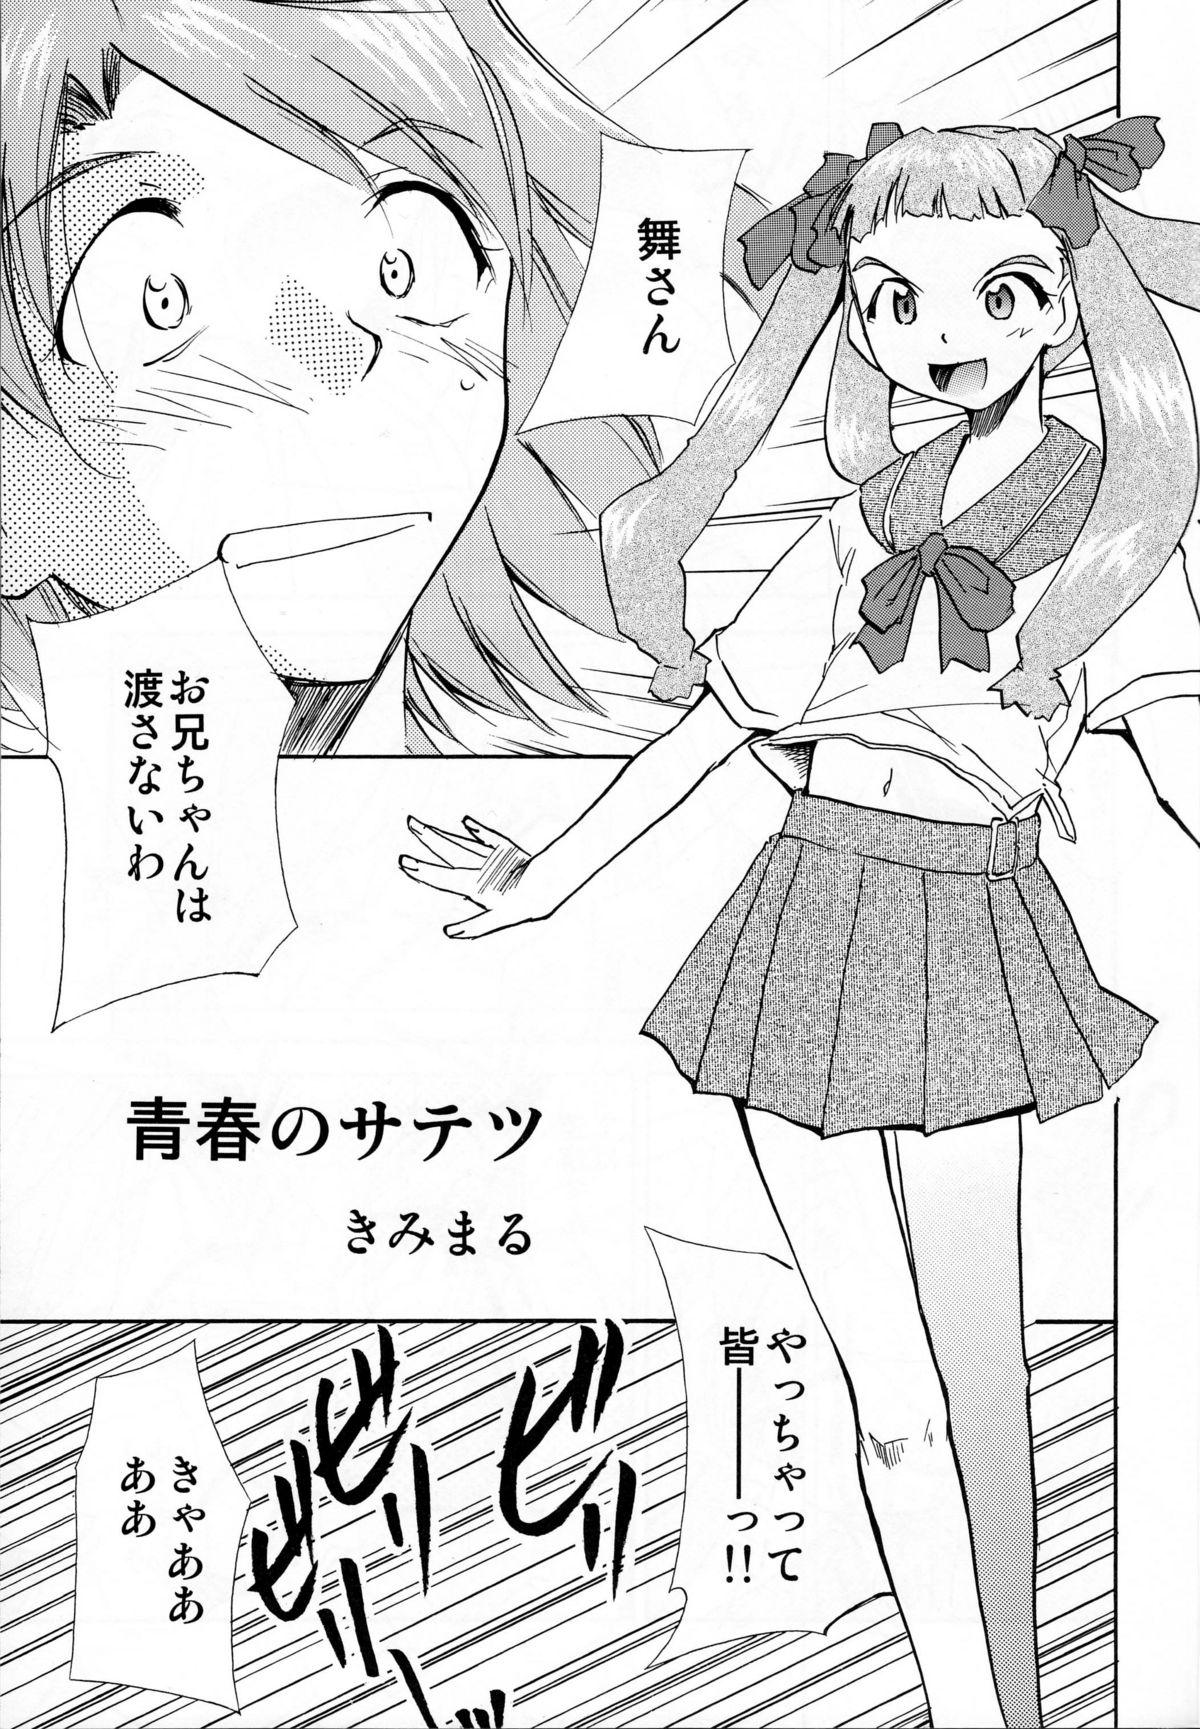 Hairy Pussy Watashi-tachi wa kamida | We are Gods - Macross frontier Mai-hime Kiddy grade Tits - Page 2